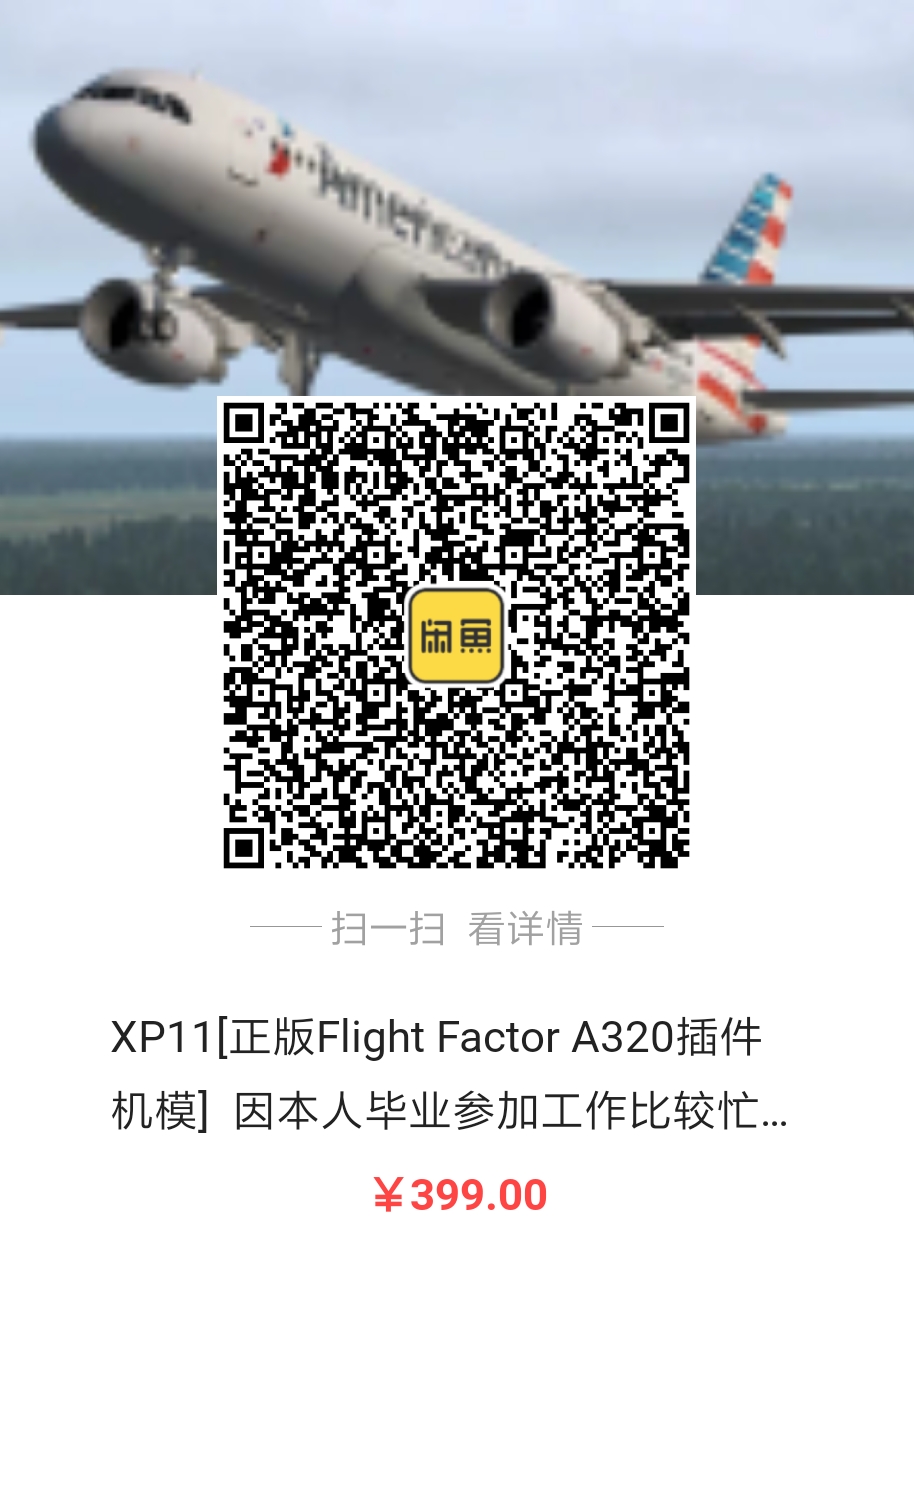 出售Flight Factor A320正版激活码，因毕业工作忙-5580 